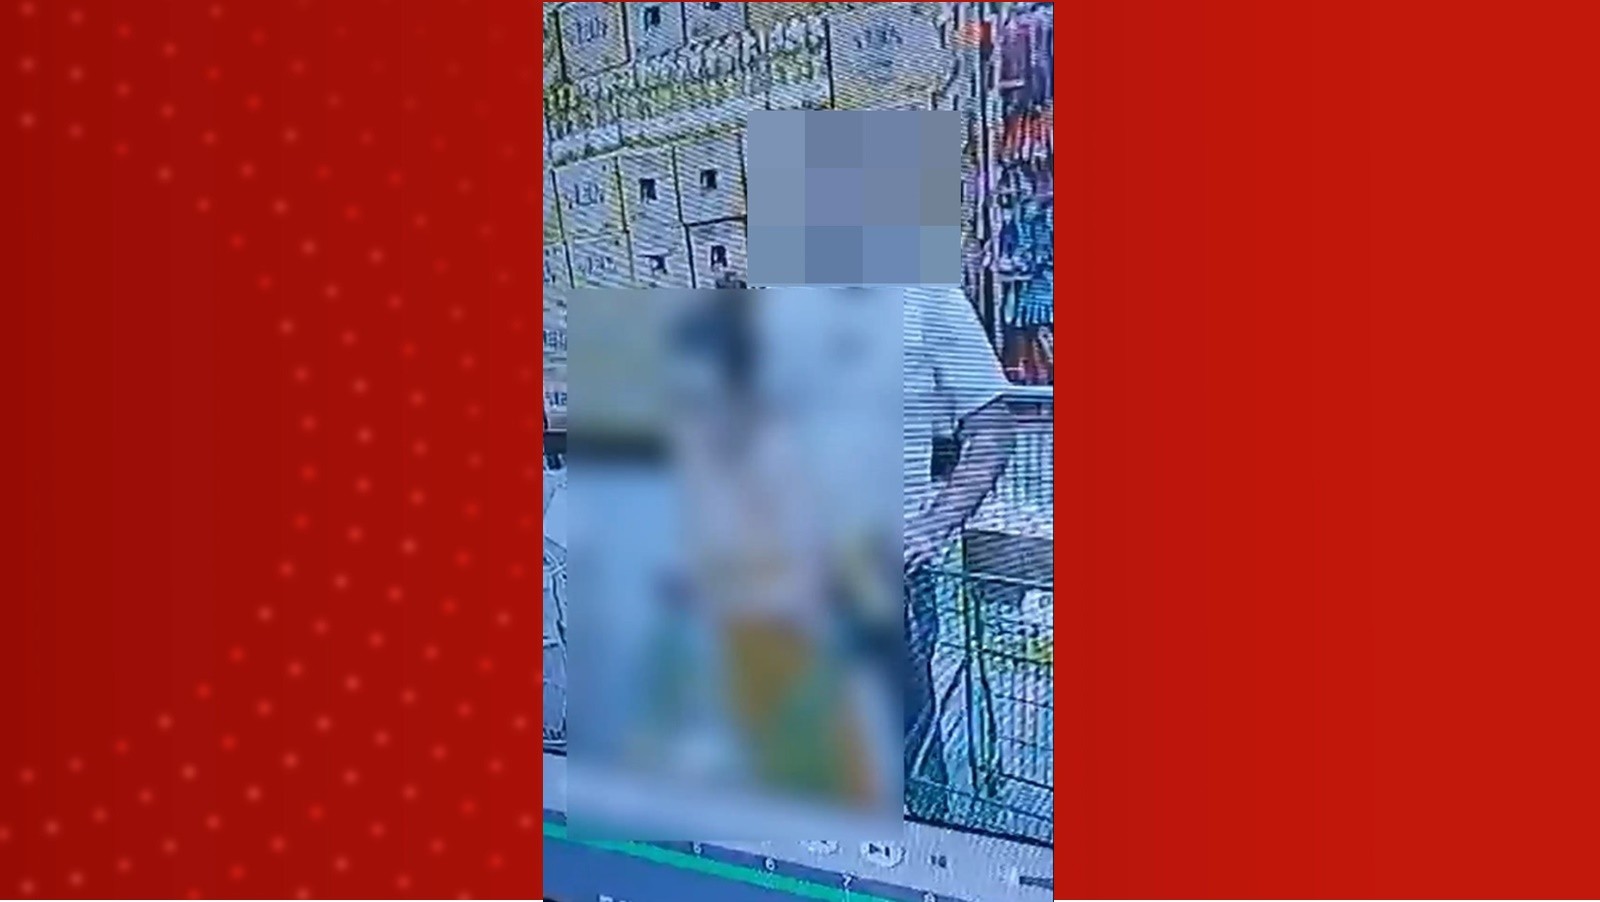 Polícia Civil prende homem investigado por importunação sexual contra mulher em fila de supermercado, em MG